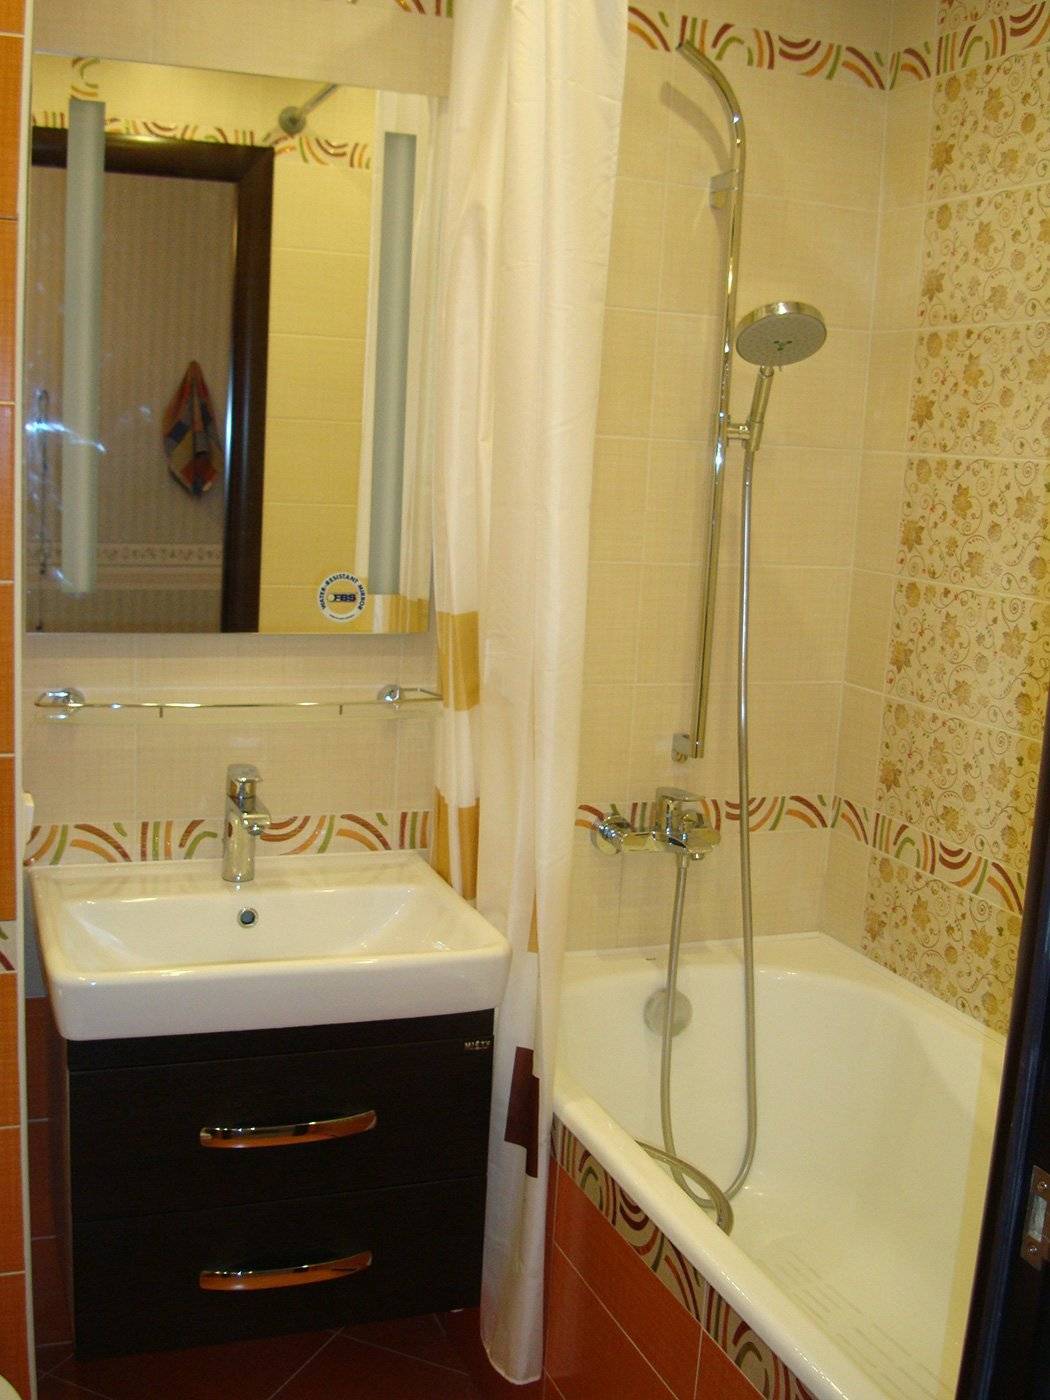 Ремонт ванной комнаты в брежневке: рекомендации